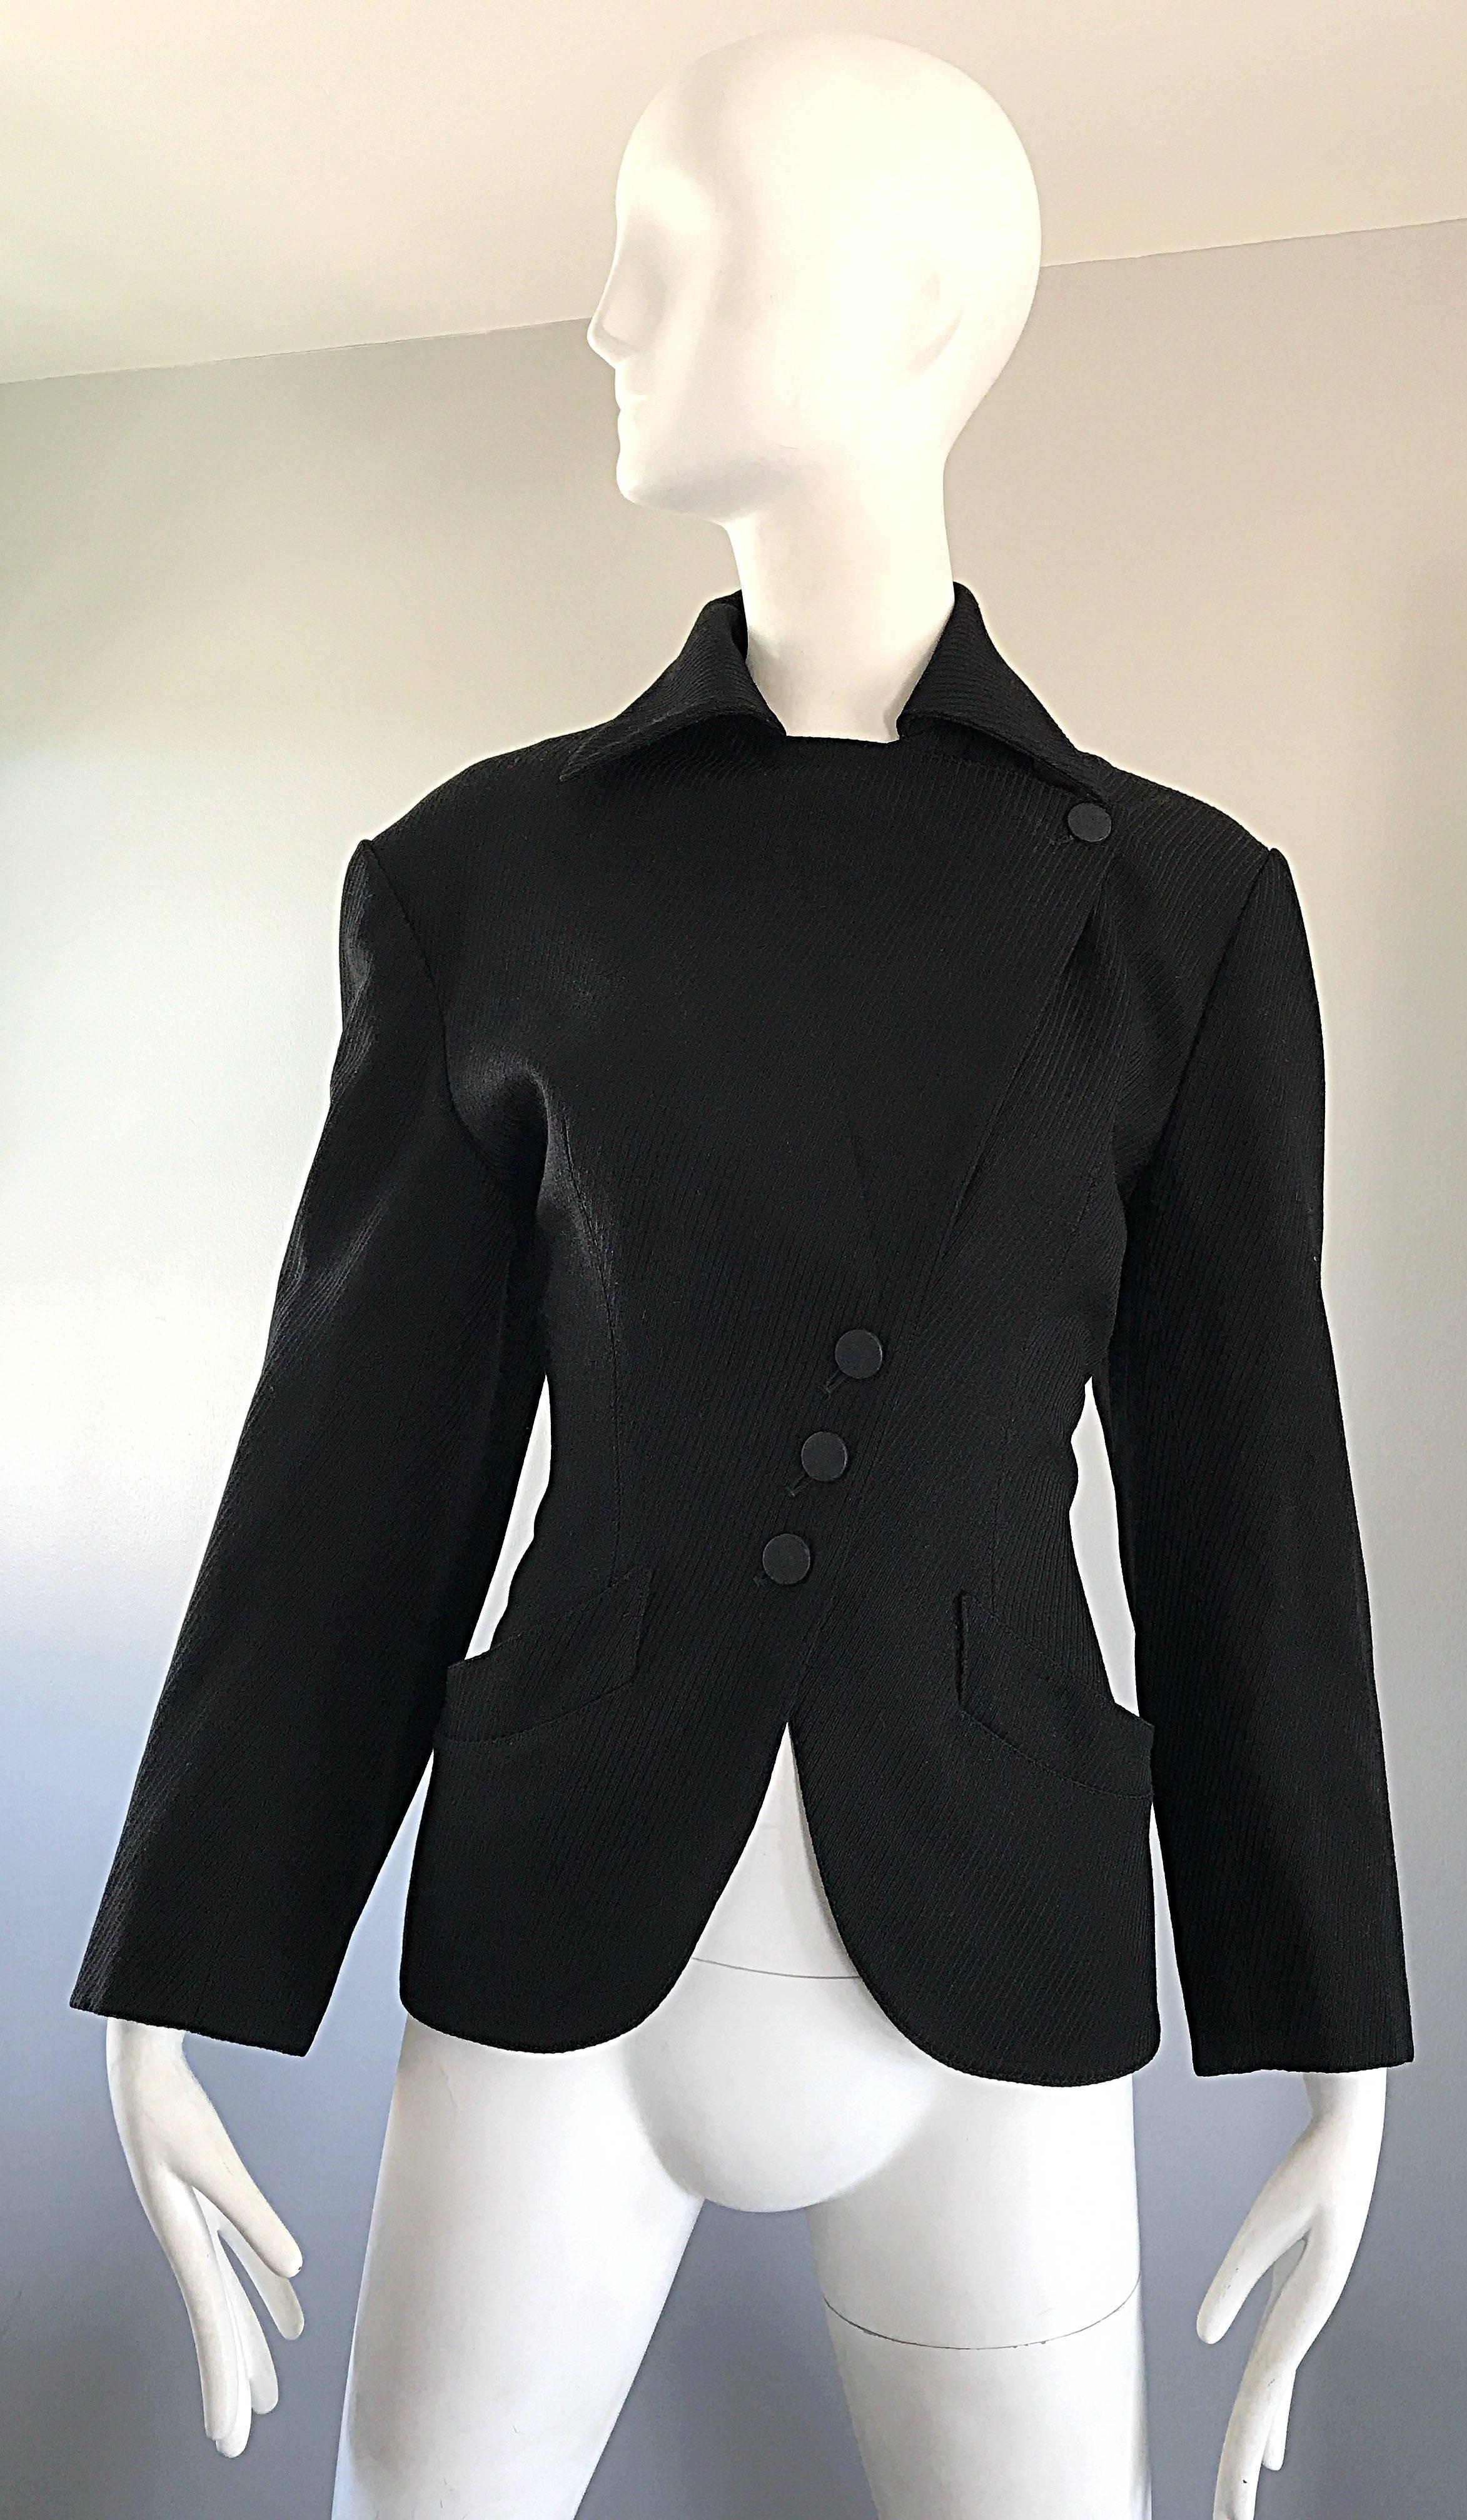 Amazing and rare musuem held AZZEDINE ALAIA mid 1980s black corset style Avant Garde jacket ! Des versions de cette perle rare ont été présentées dans l'exposition Alaia au musée de Groningue et dans le livre 